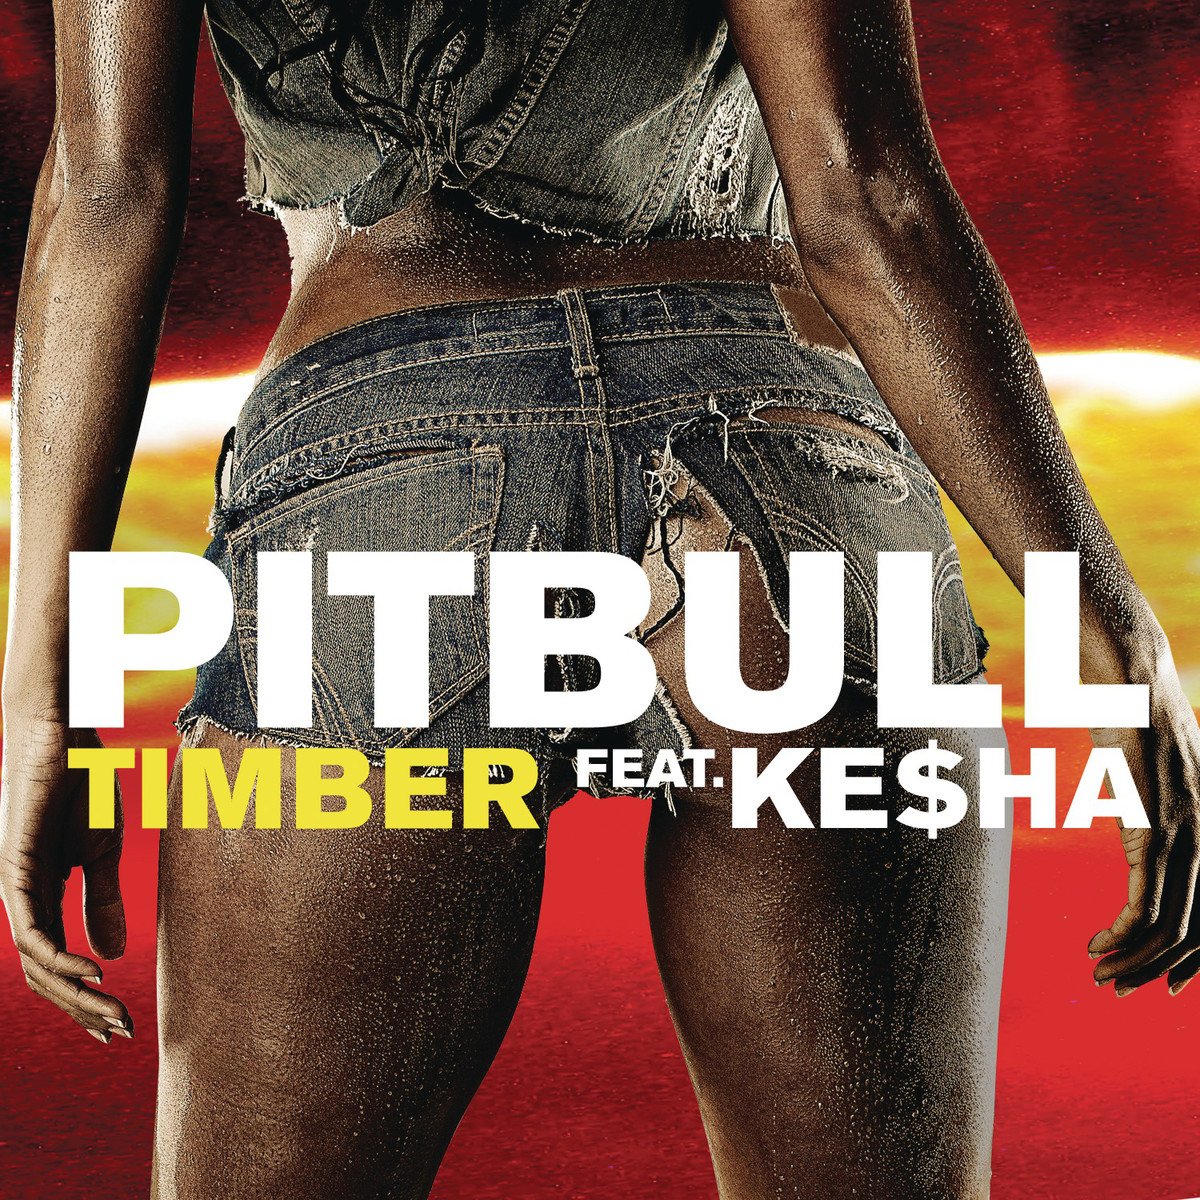 Pitbull feat. Ke$ha – Timber